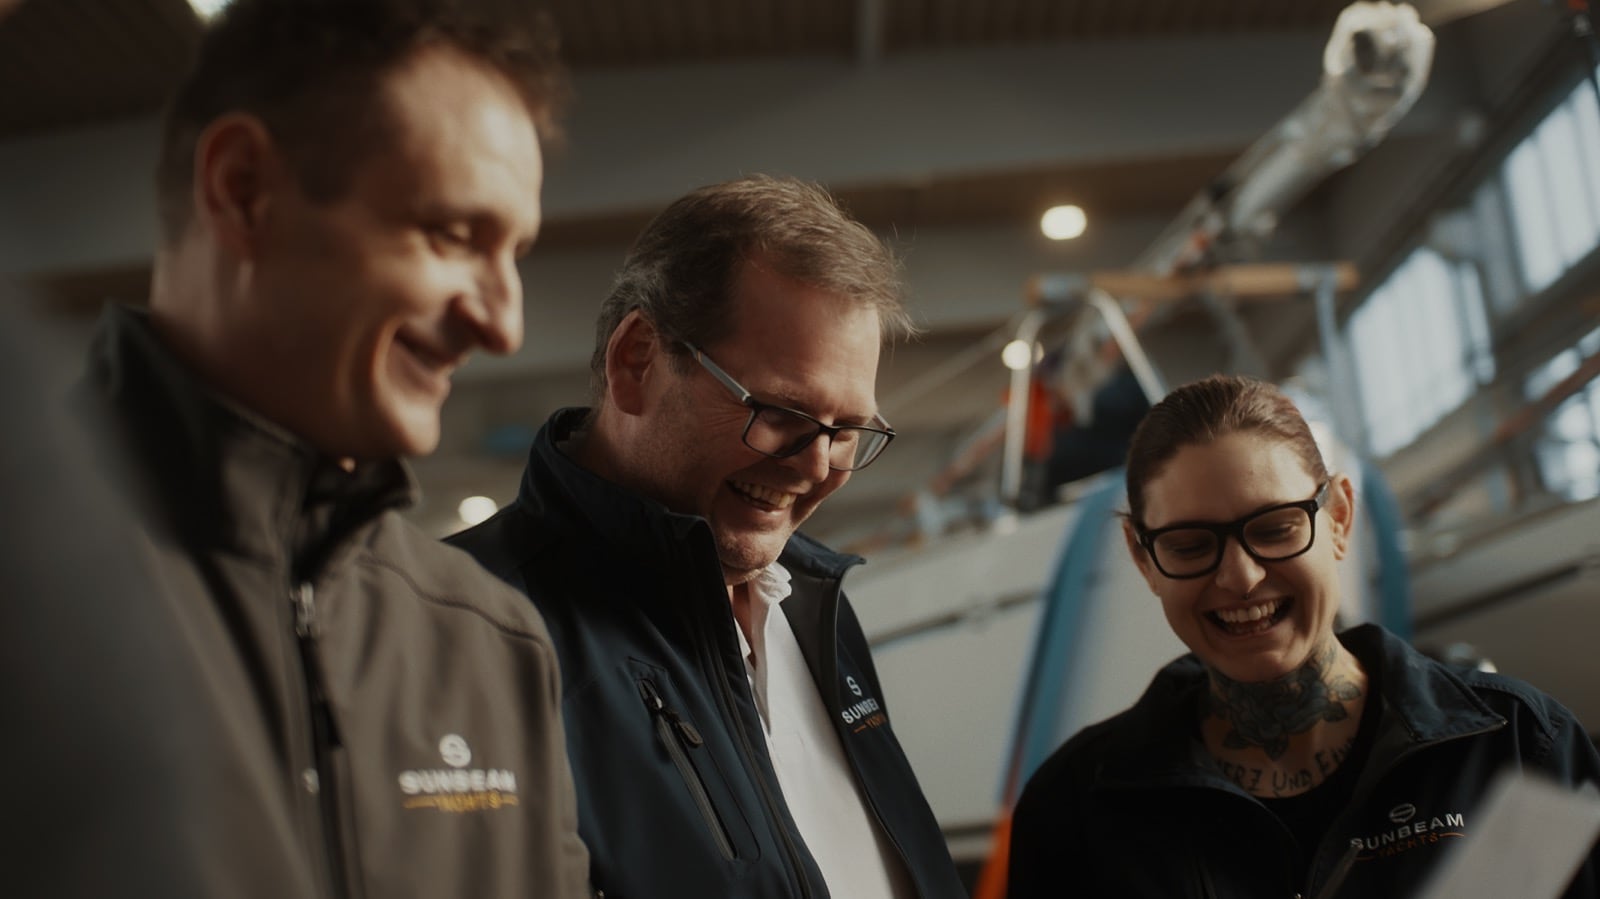 Drei fröhliche Sunbeam Yachts Mitarbeiter teilen einen leichten Moment in der Werft